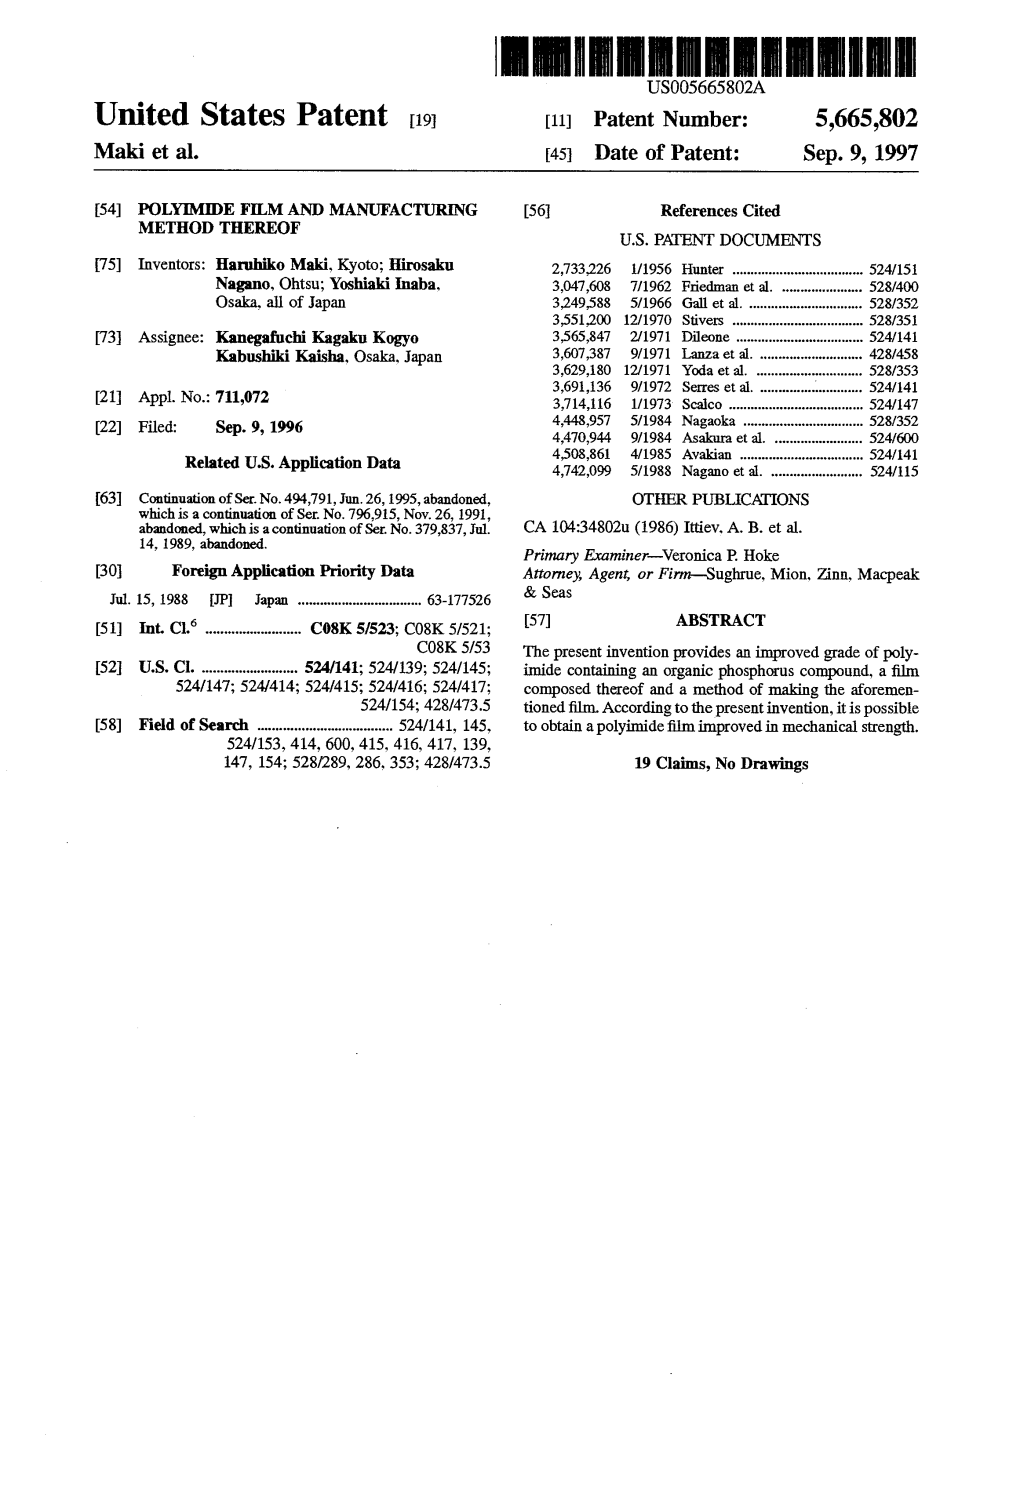 United States Patent 19 11 Patent Number: 5,665,802 Maki Et Al